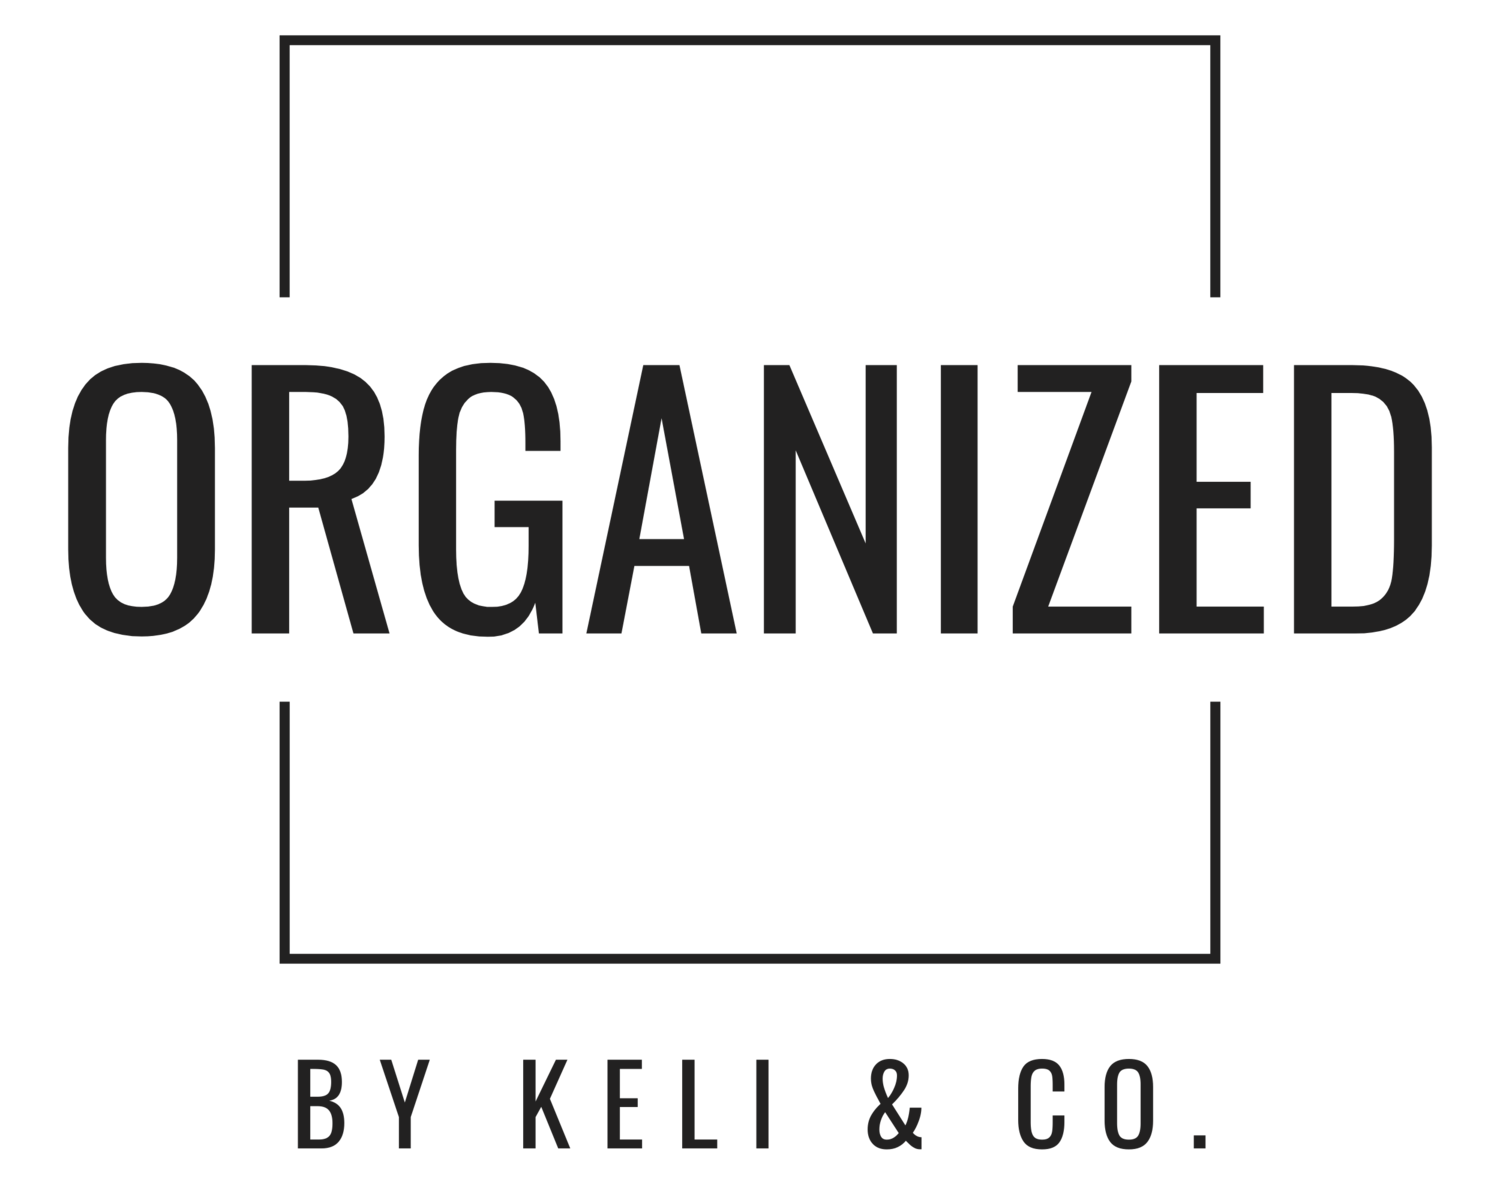 Brand Logo Organized by Keli & Co